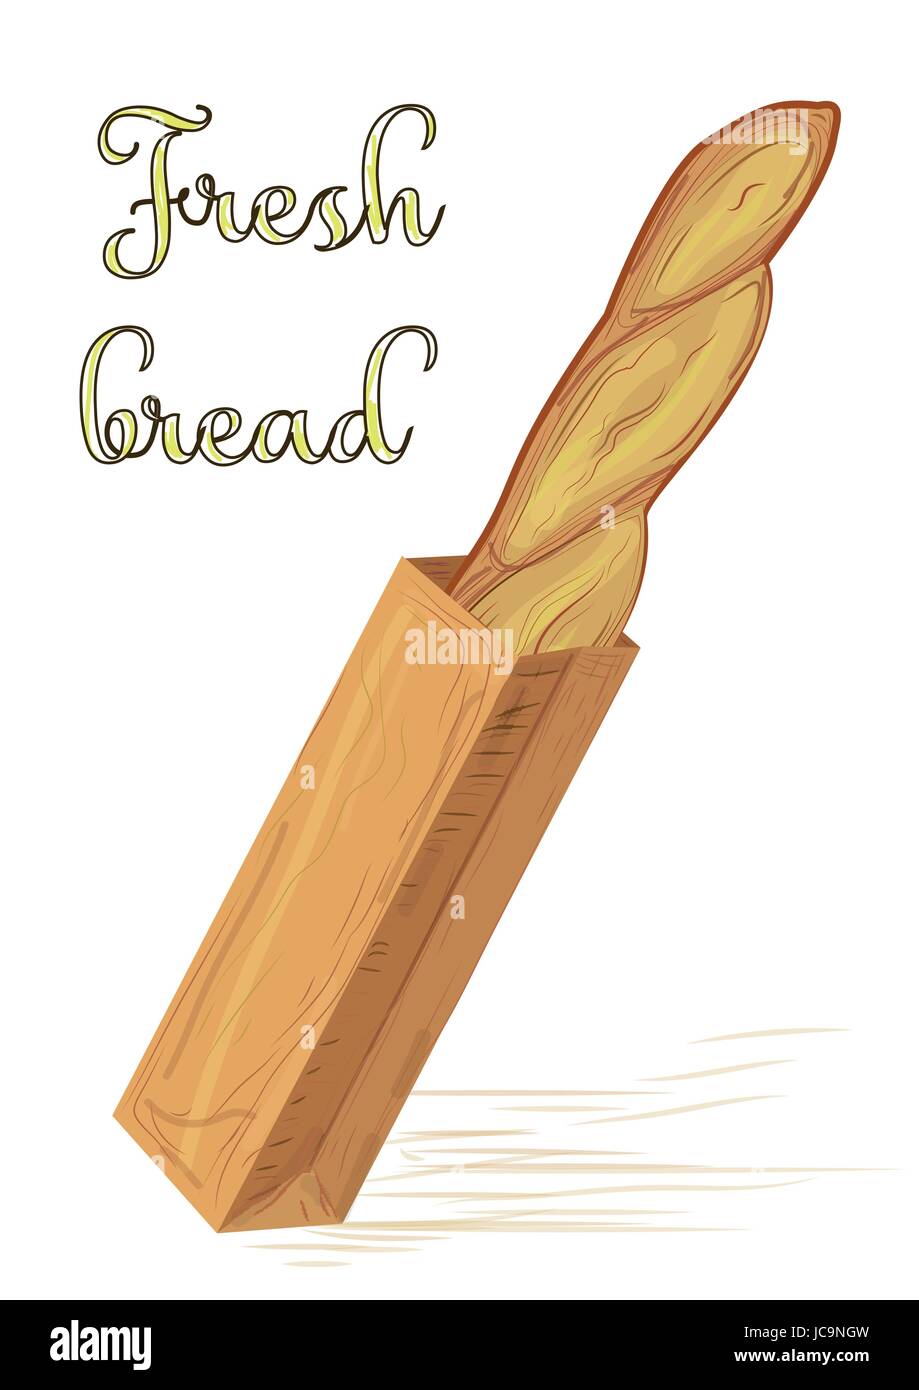 Bread french loaf baguette in paper bag vector illustration Stock Vector